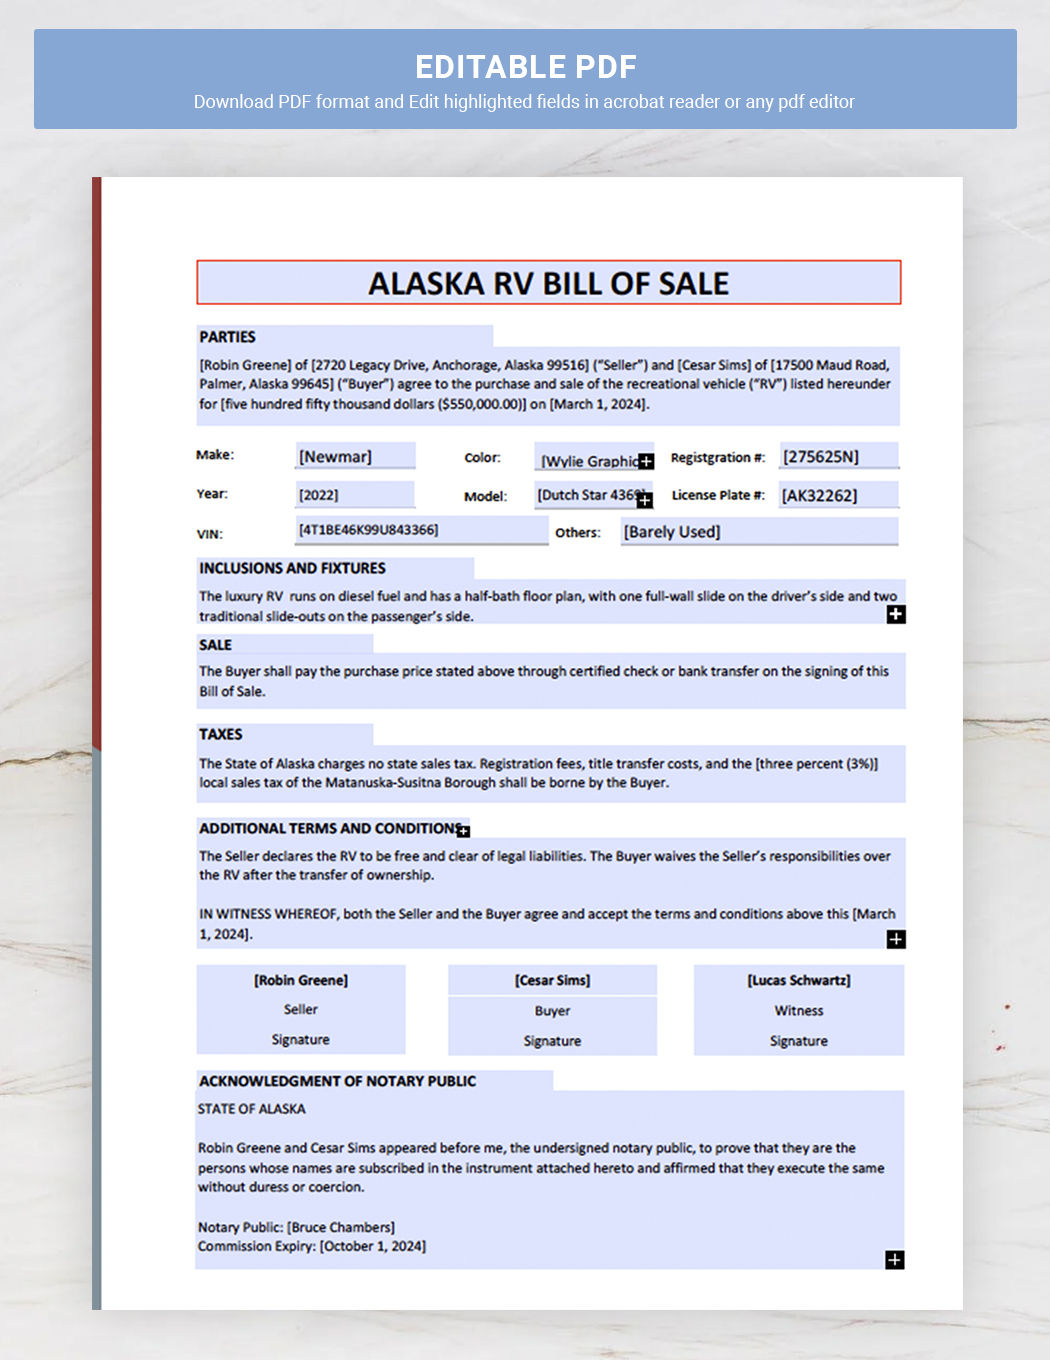 Alaska RV Bill of Sale Template